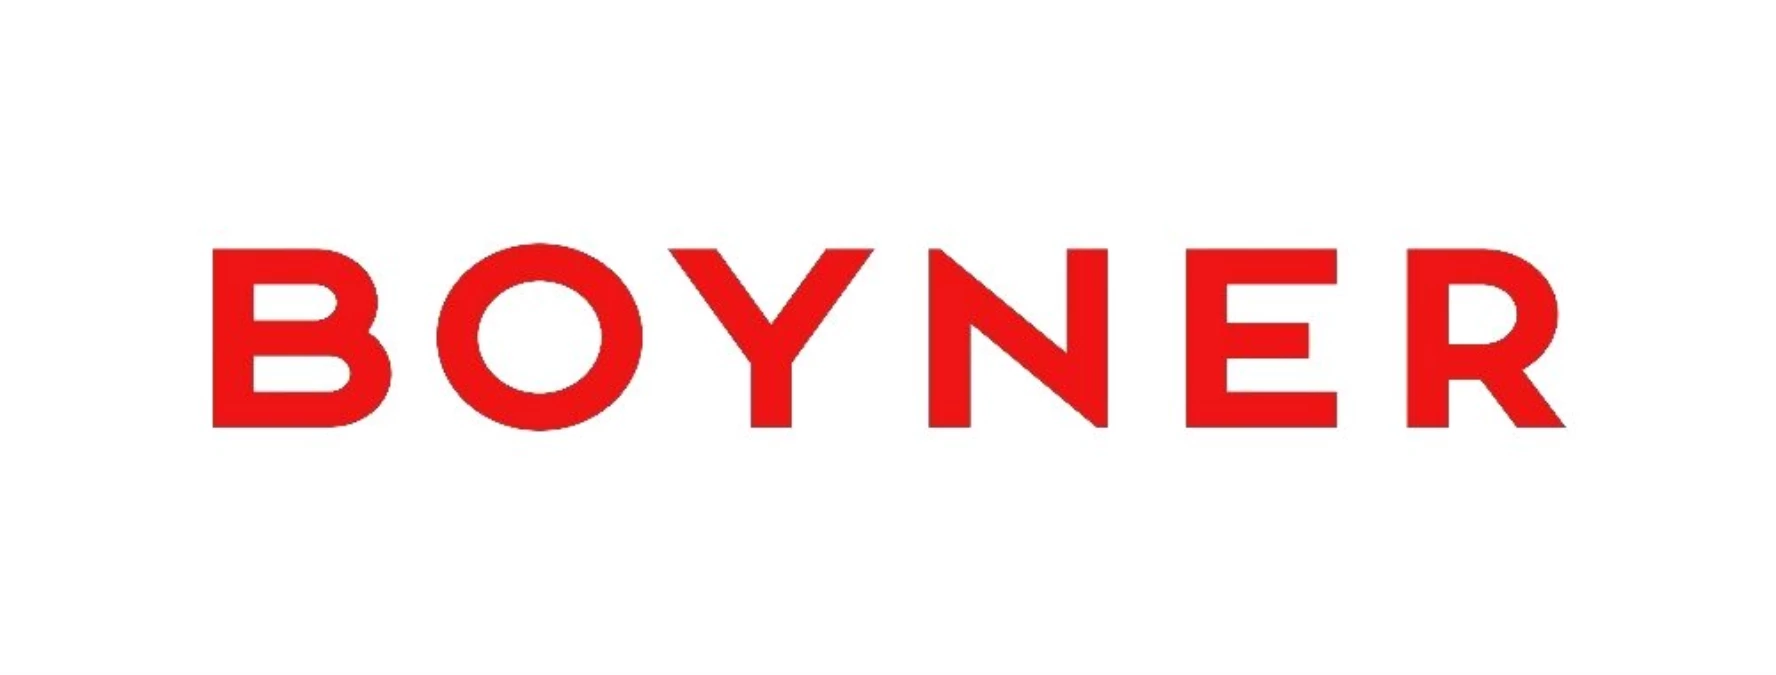 Boyner Holding - Mayhoola anlaşmasının detayları açıklandı